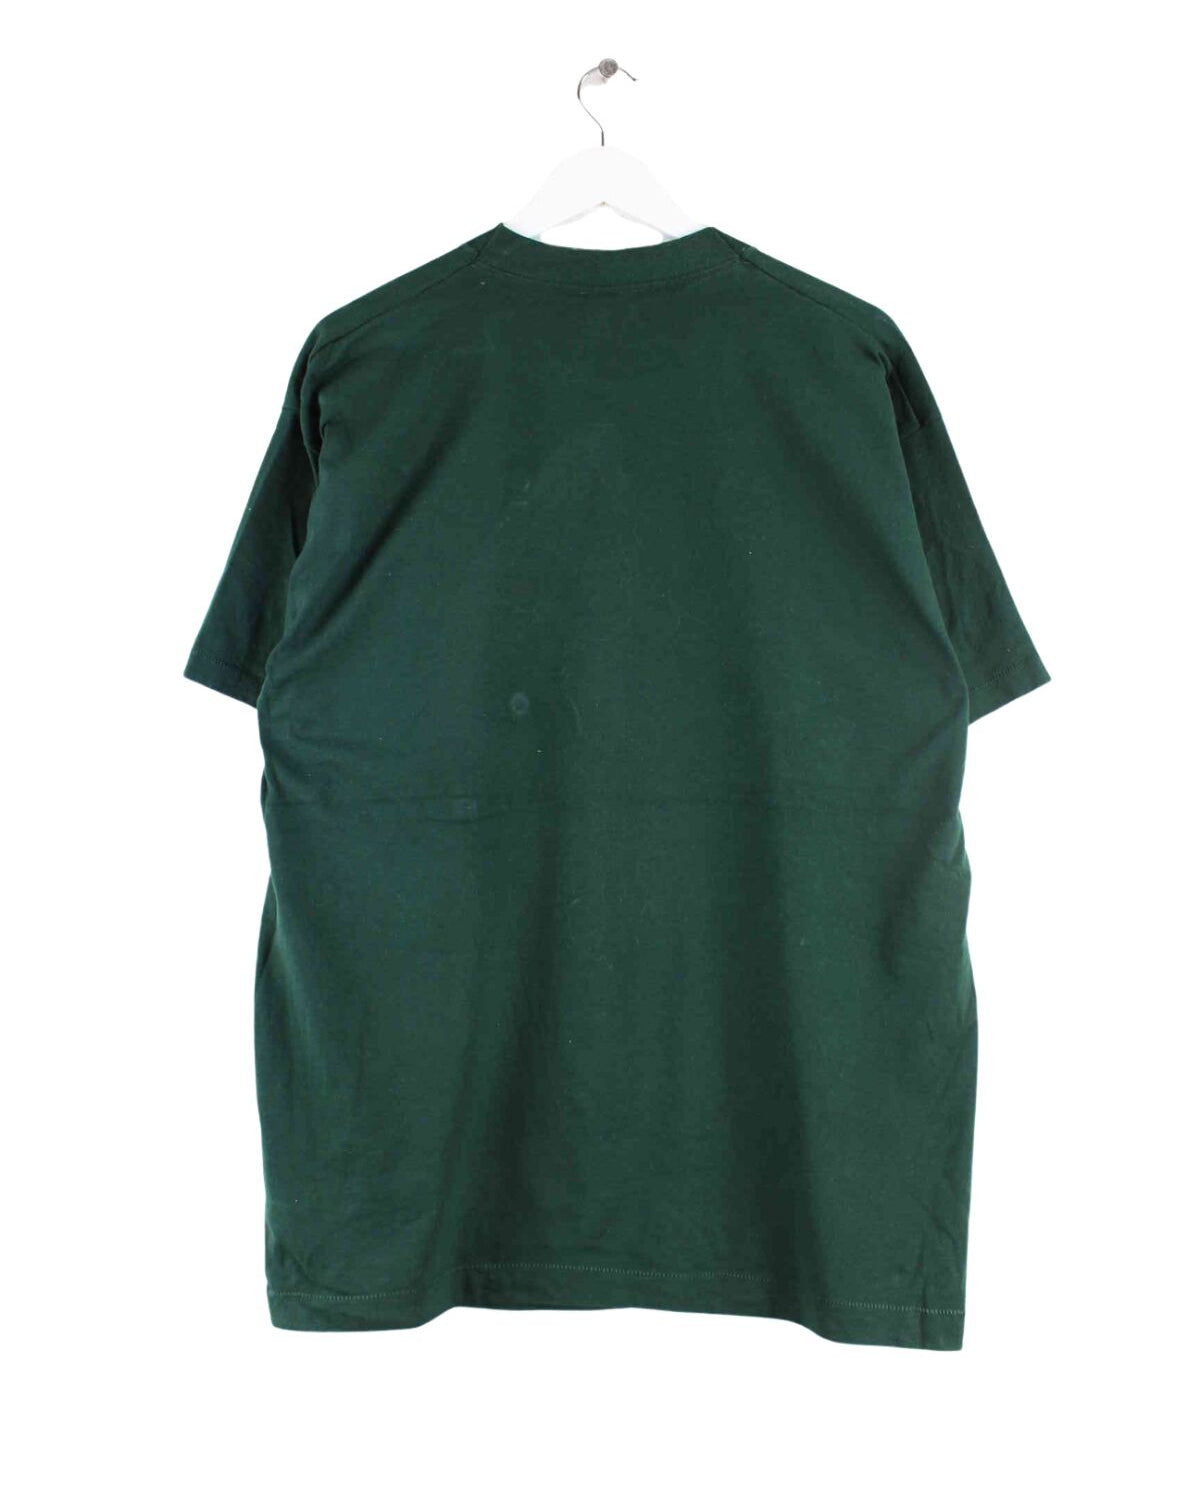 Vintage 90s Painted Single Stitched T-Shirt Grün L (back image)